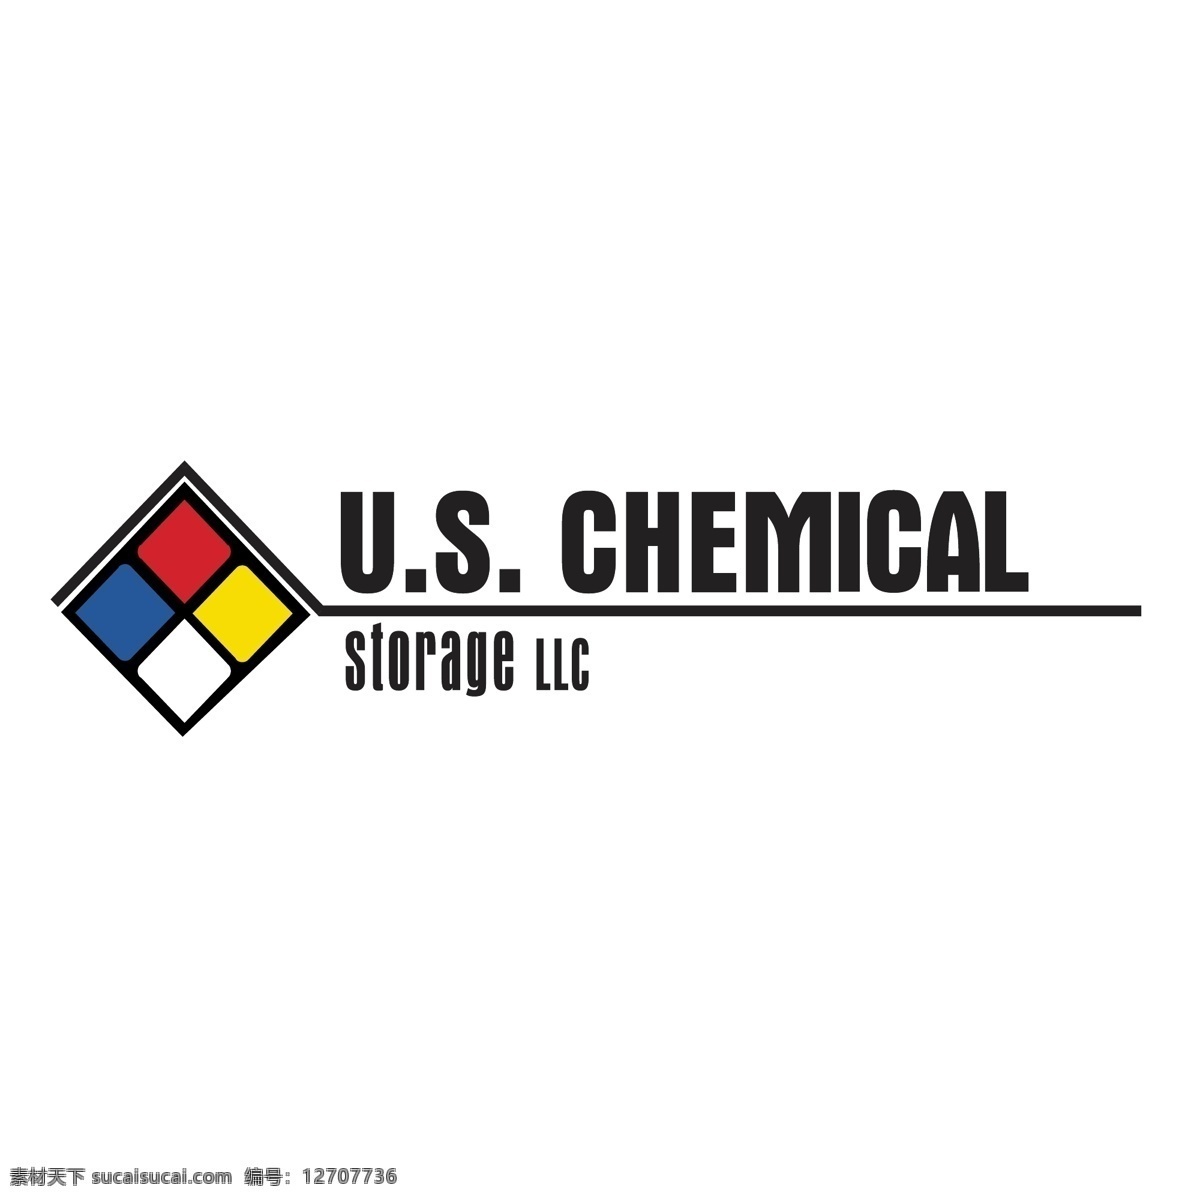 美国 化学品 储存 化工 化学 化学品储存 贮存化学载体 化学贮藏 化学储存 载体 符号 向量 存储 存储的化学 免费 矢量 我们 向量的美国 矢量图 建筑家居